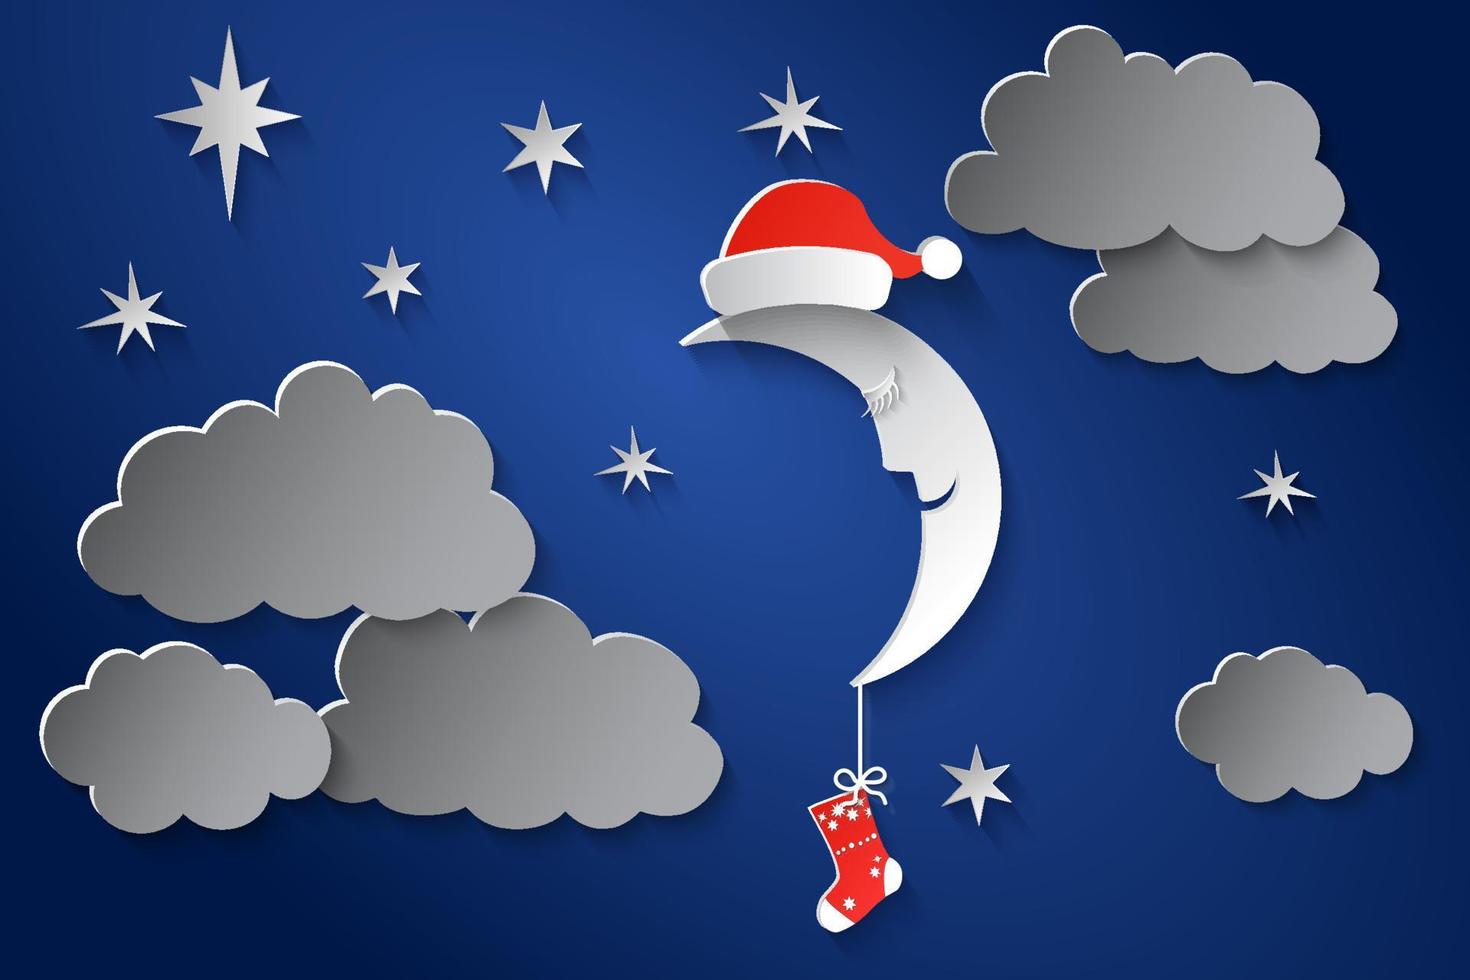 de maan in pet van de kerstman claus en met een sok in de nacht sterrenhemel lucht. papier kunst stijl. eps10 vector